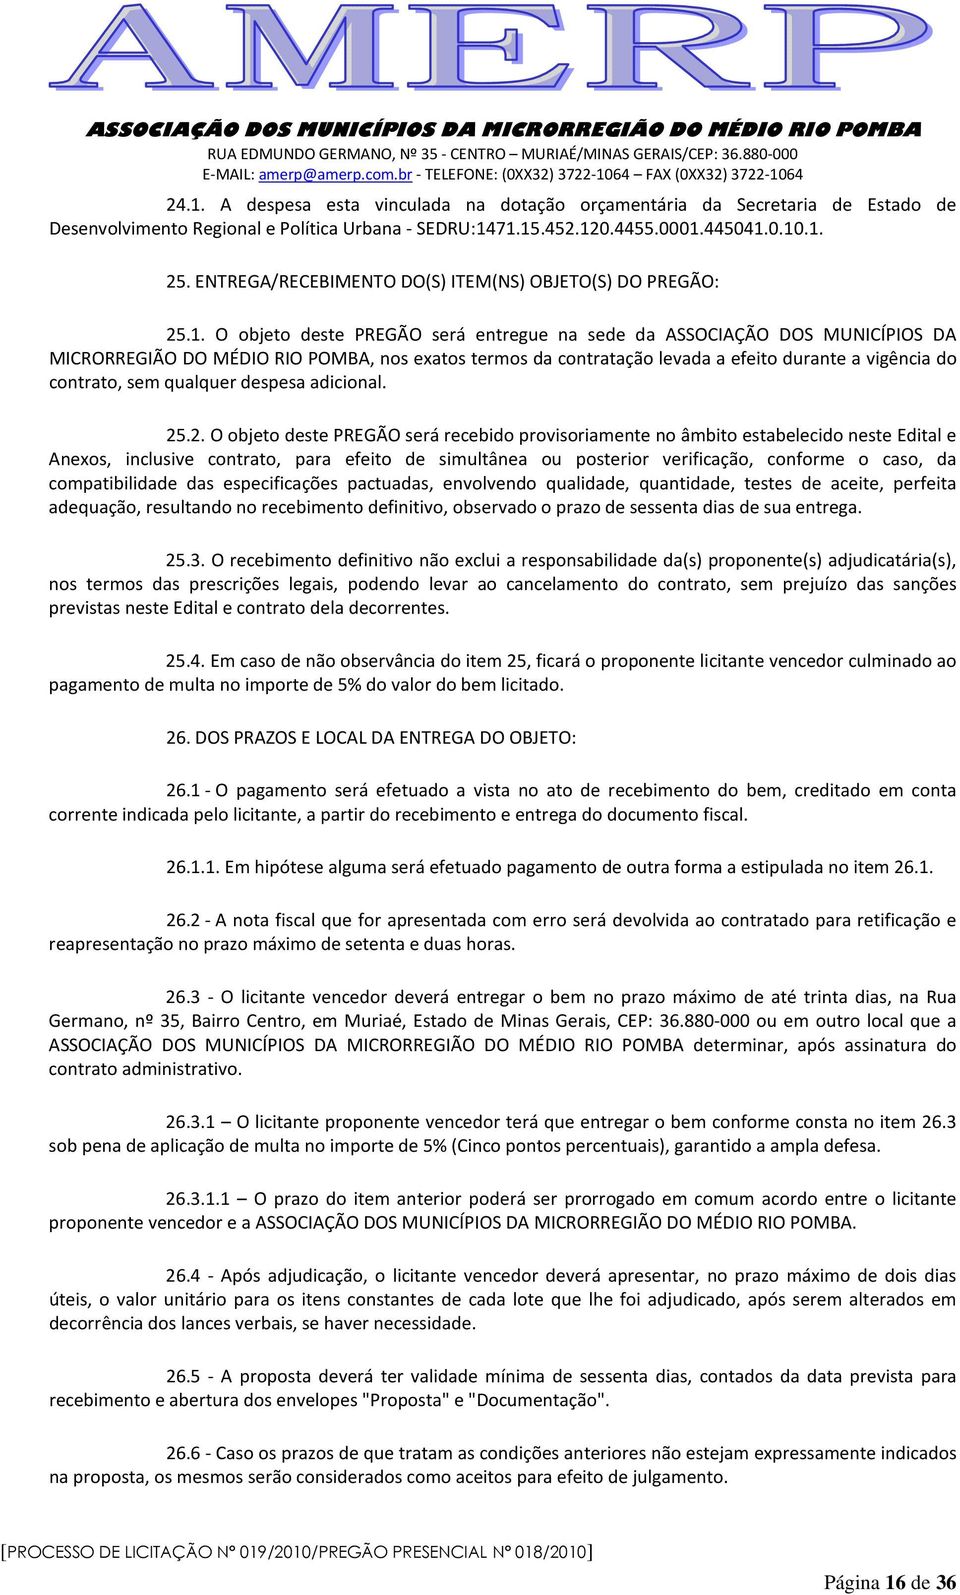 O objeto deste PREGÃO será entregue na sede da ASSOCIAÇÃO DOS MUNICÍPIOS DA MICRORREGIÃO DO MÉDIO RIO POMBA, nos exatos termos da contratação levada a efeito durante a vigência do contrato, sem